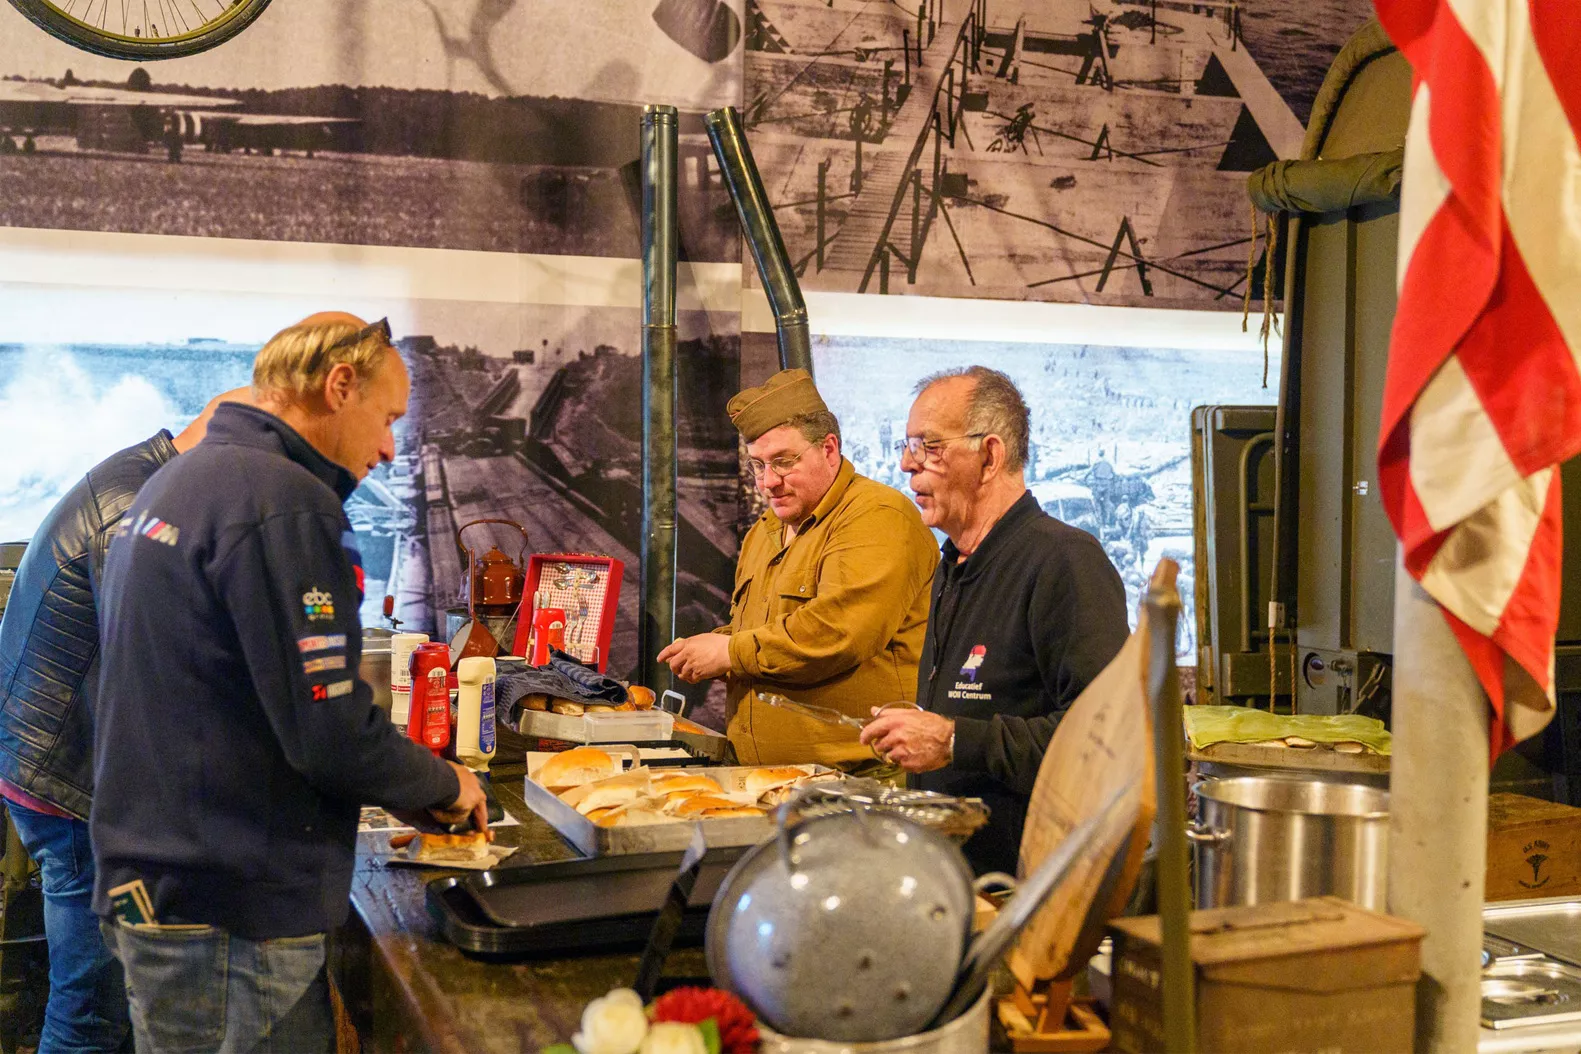 Museumbezoekers scheppen eten van het leger op wat gemaakt is op veldkeukens uit de Tweede Wereldoorlog in een Oorlogsmuseum